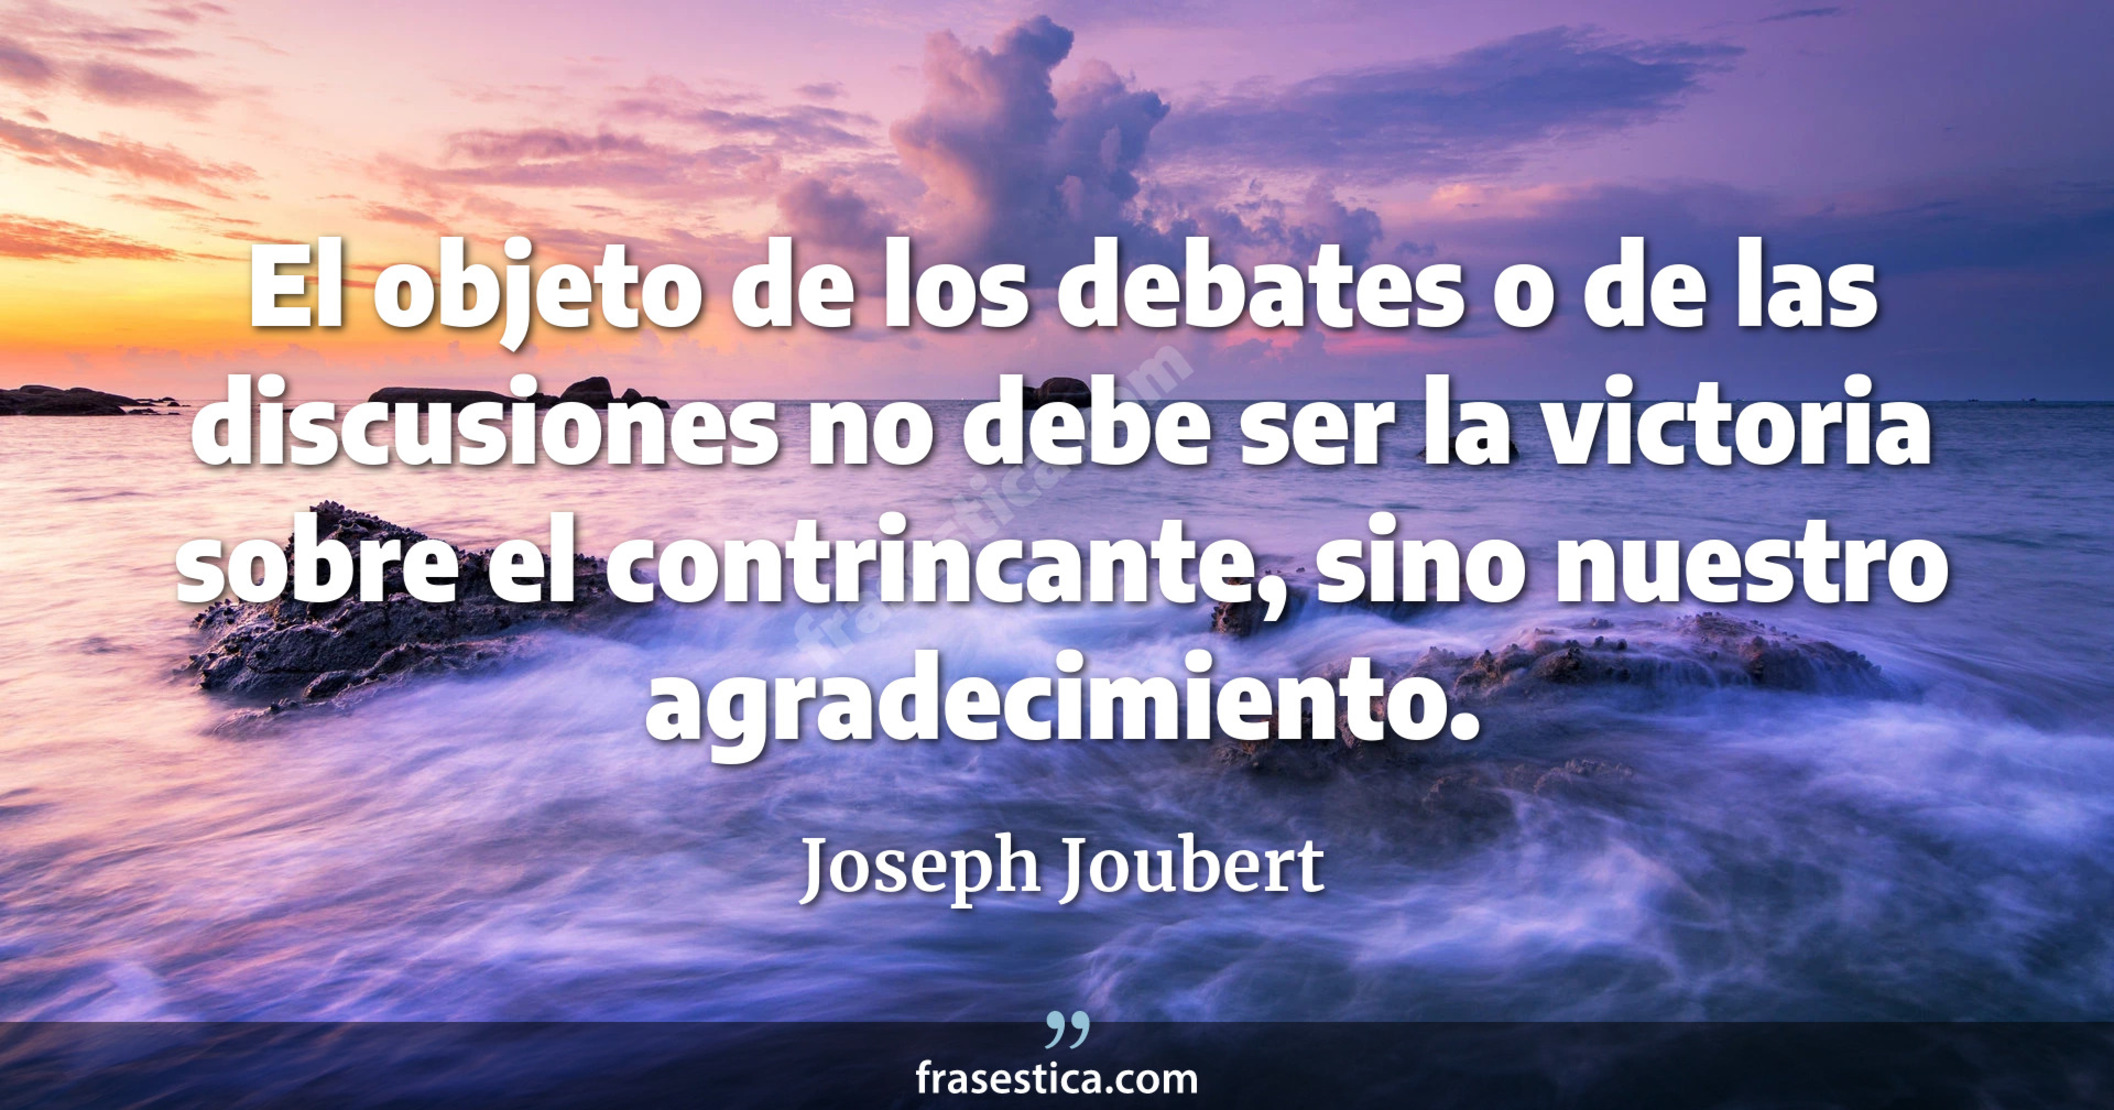 El objeto de los debates o de las discusiones no debe ser la victoria sobre el contrincante, sino nuestro agradecimiento. - Joseph Joubert